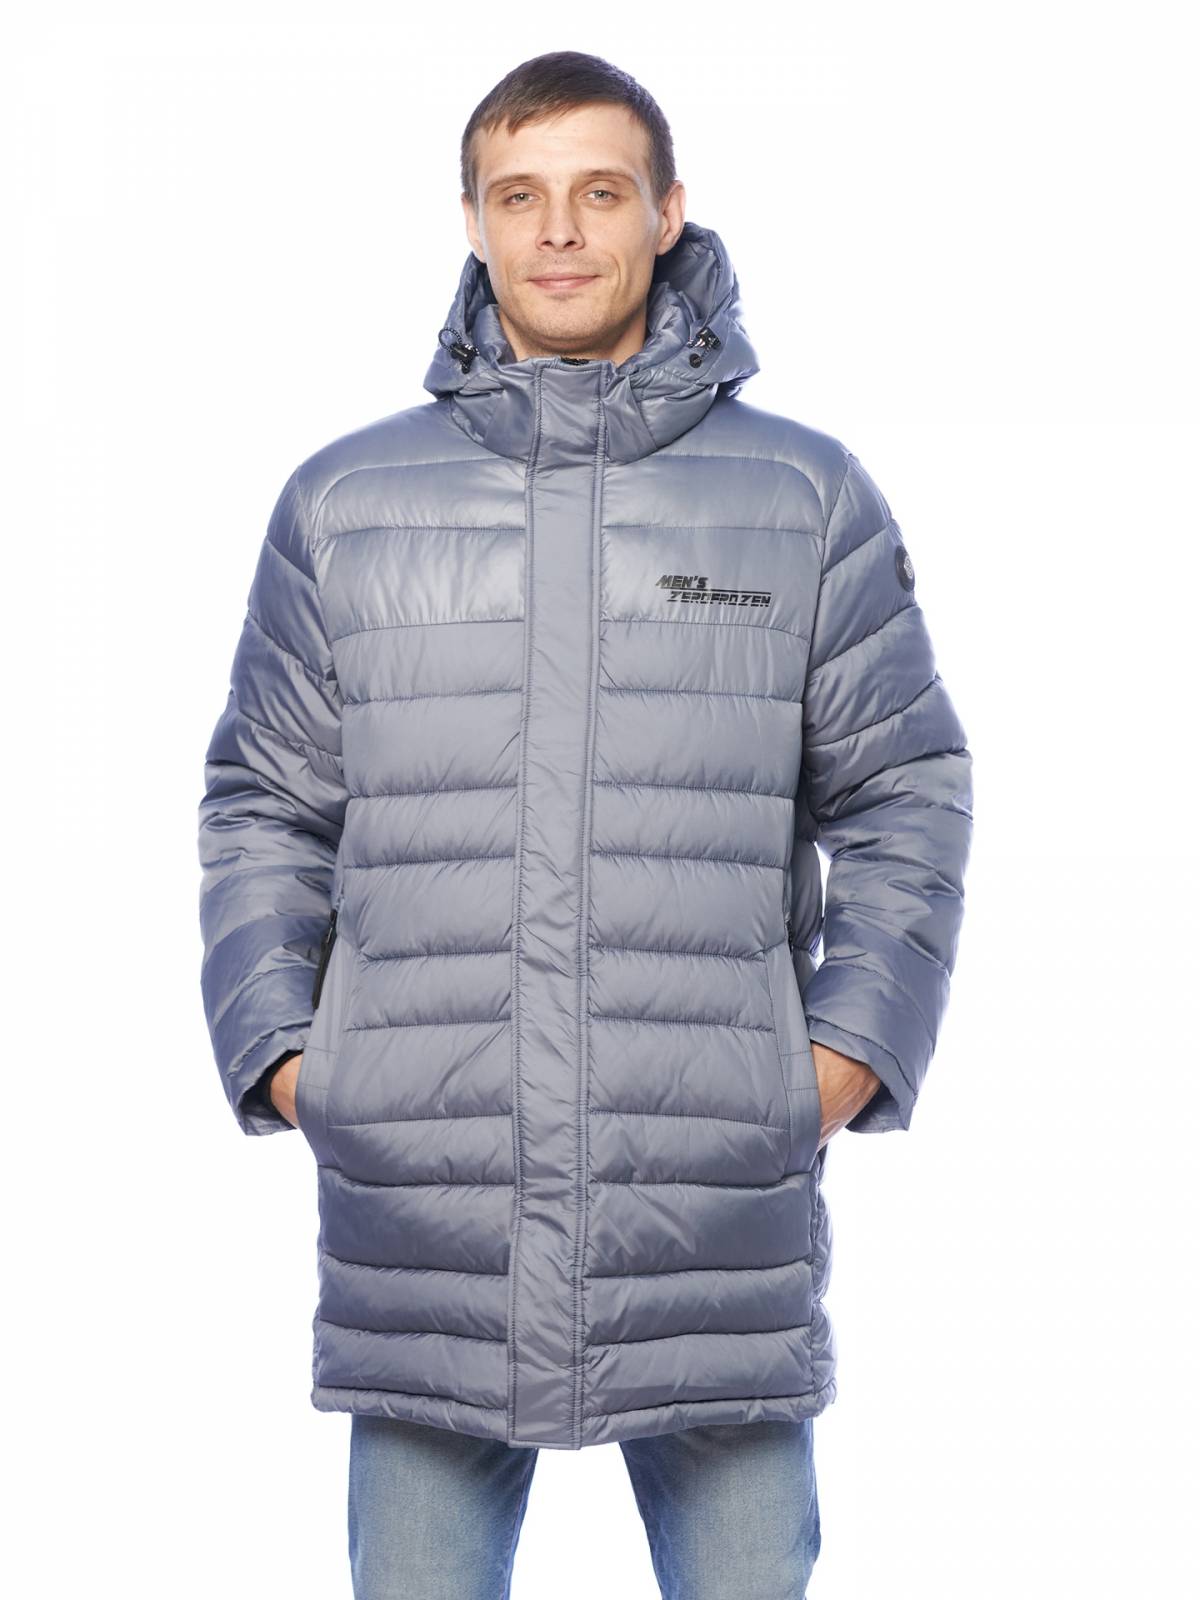 Зимняя куртка мужская Zero Frozen 4205 серая 52 RU